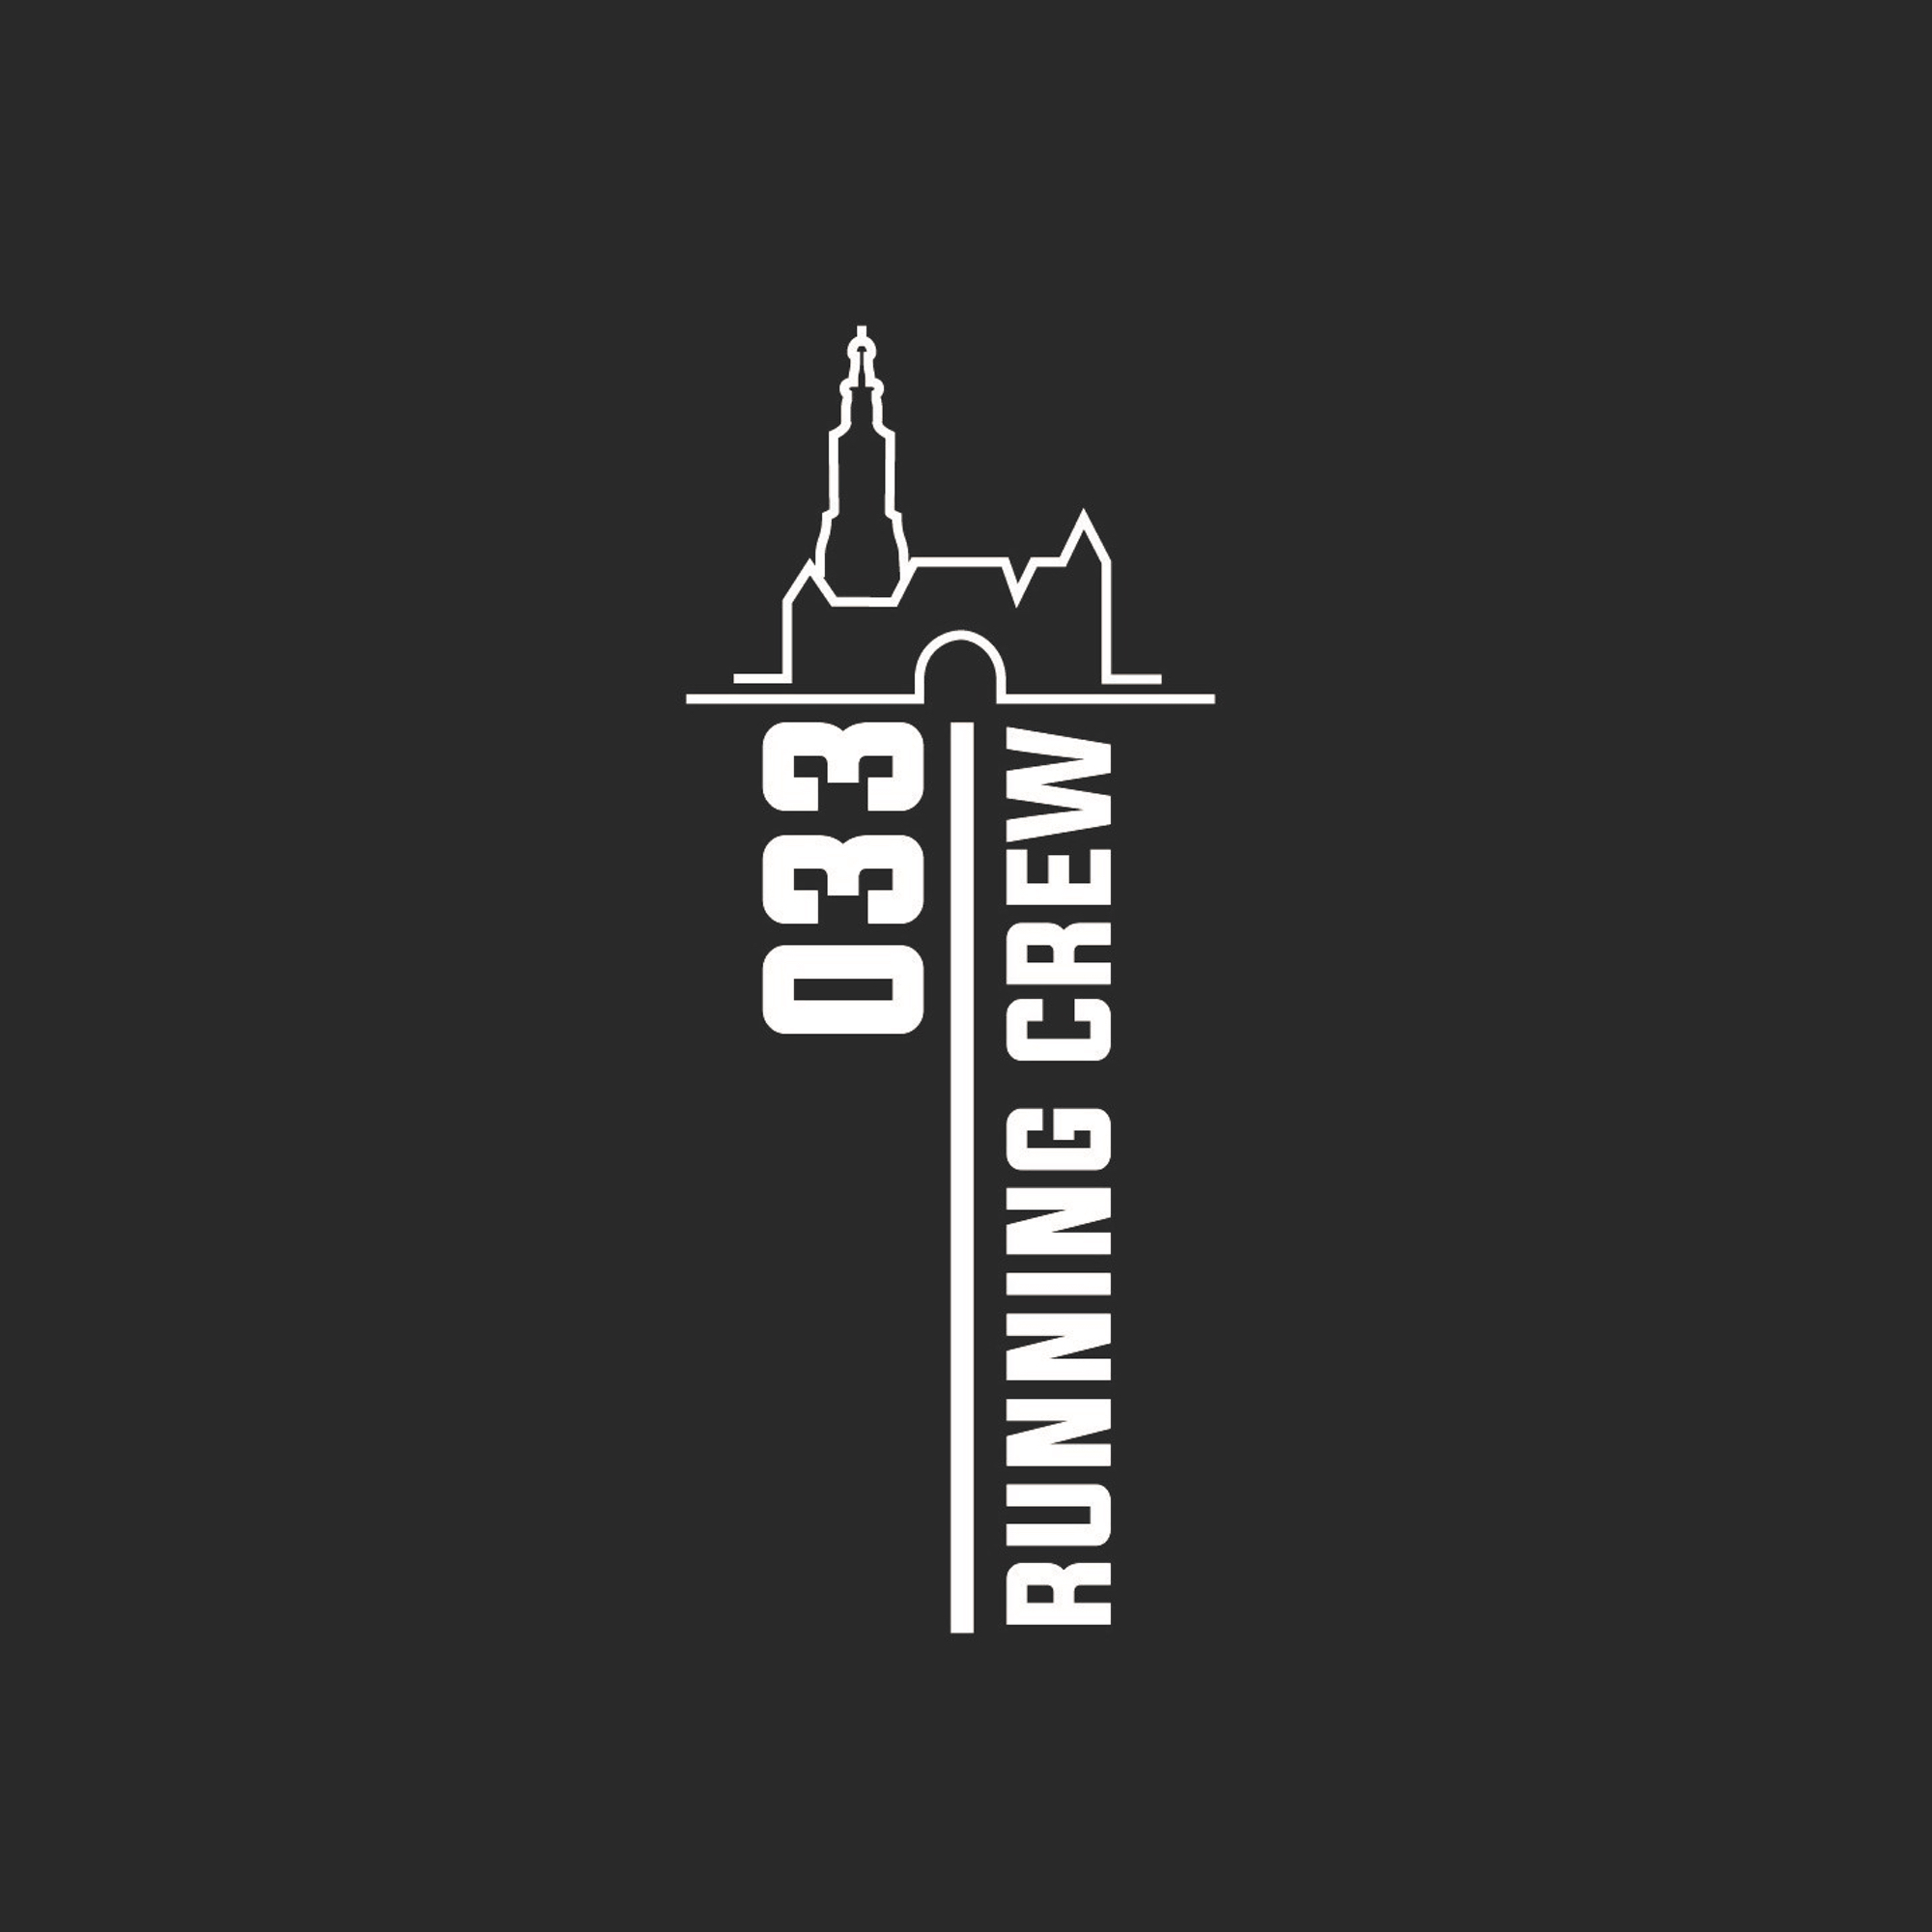 033 Running Crew Logo